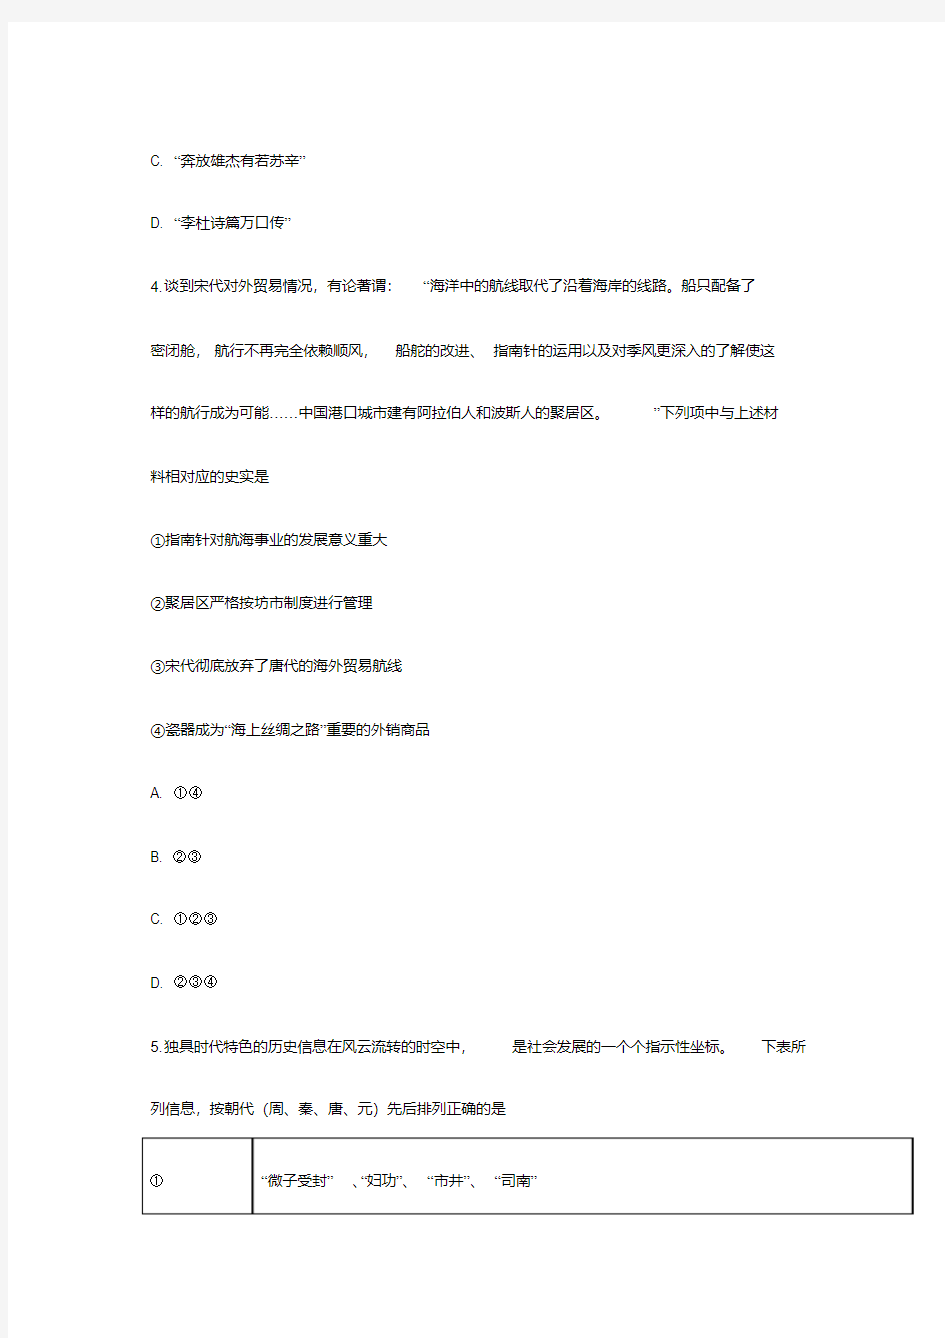 2019年浙江高考历史试题(选考科目).pdf